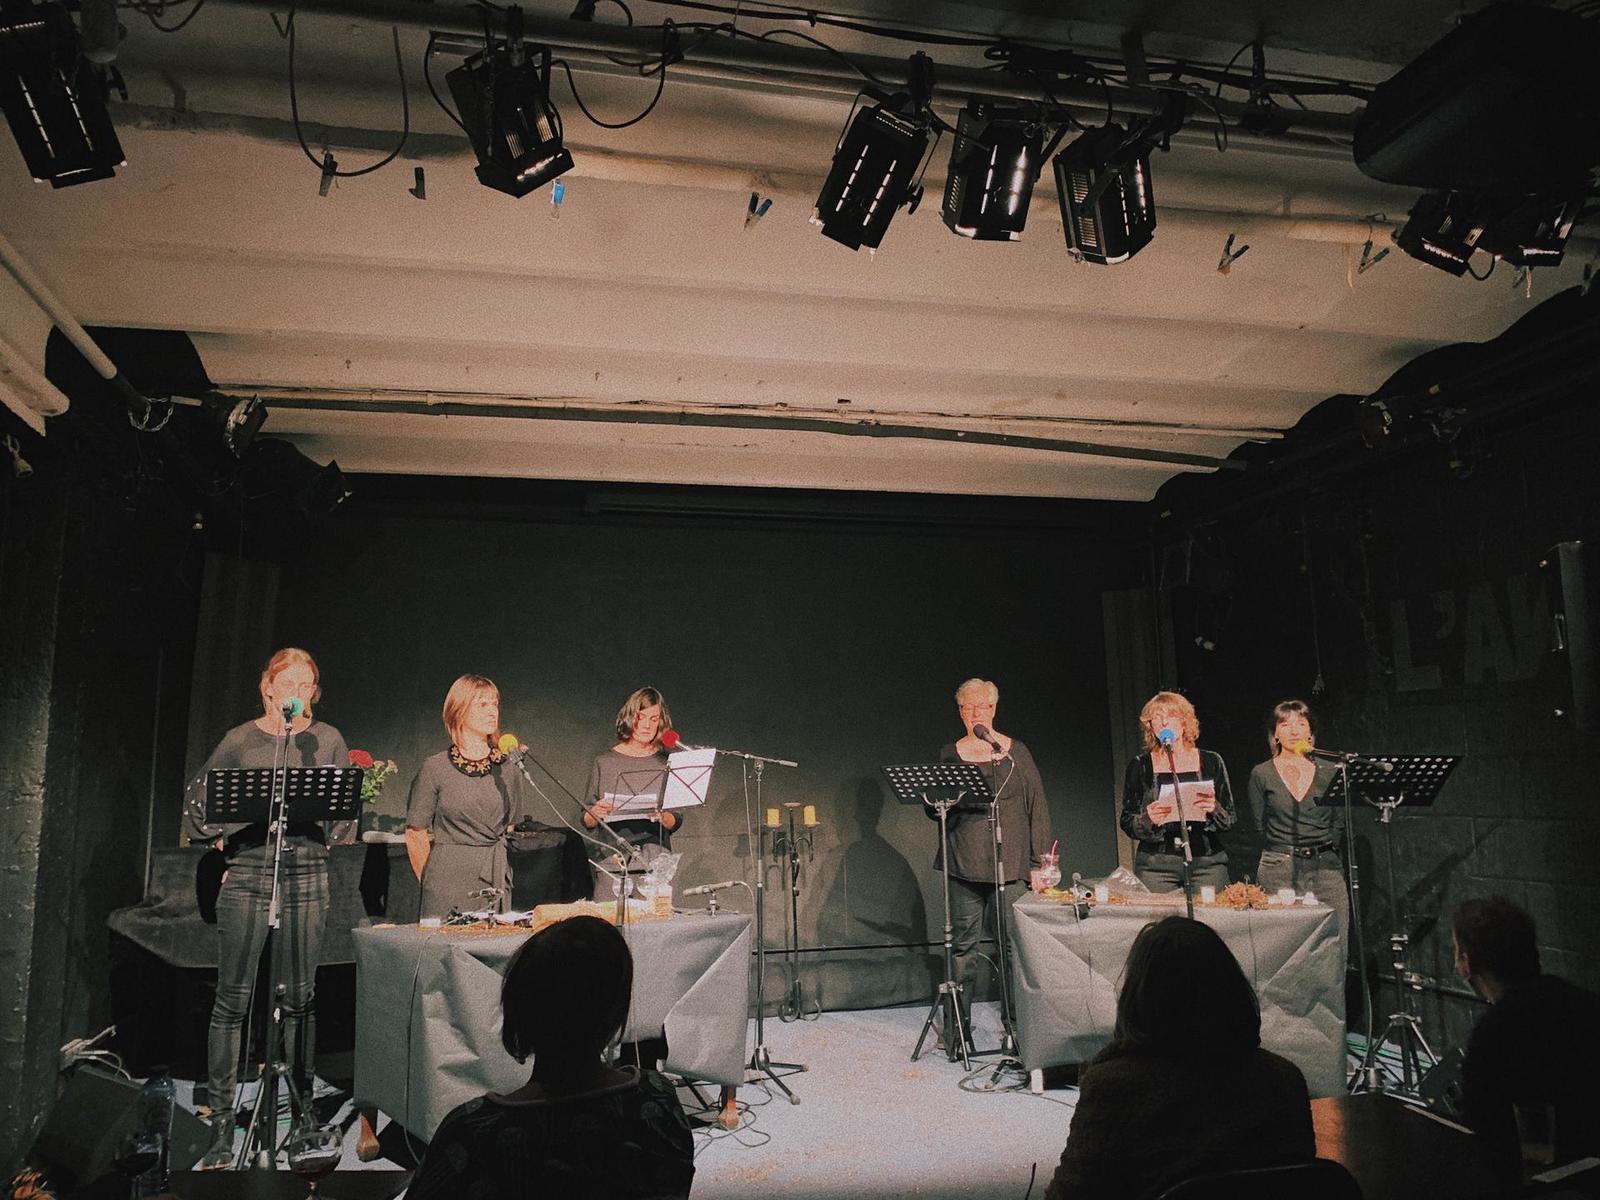 "Des corps performants", spectacle radio-live à l'An Vert, Liège, octobre 2020. Photo : Elise Dutrieux.